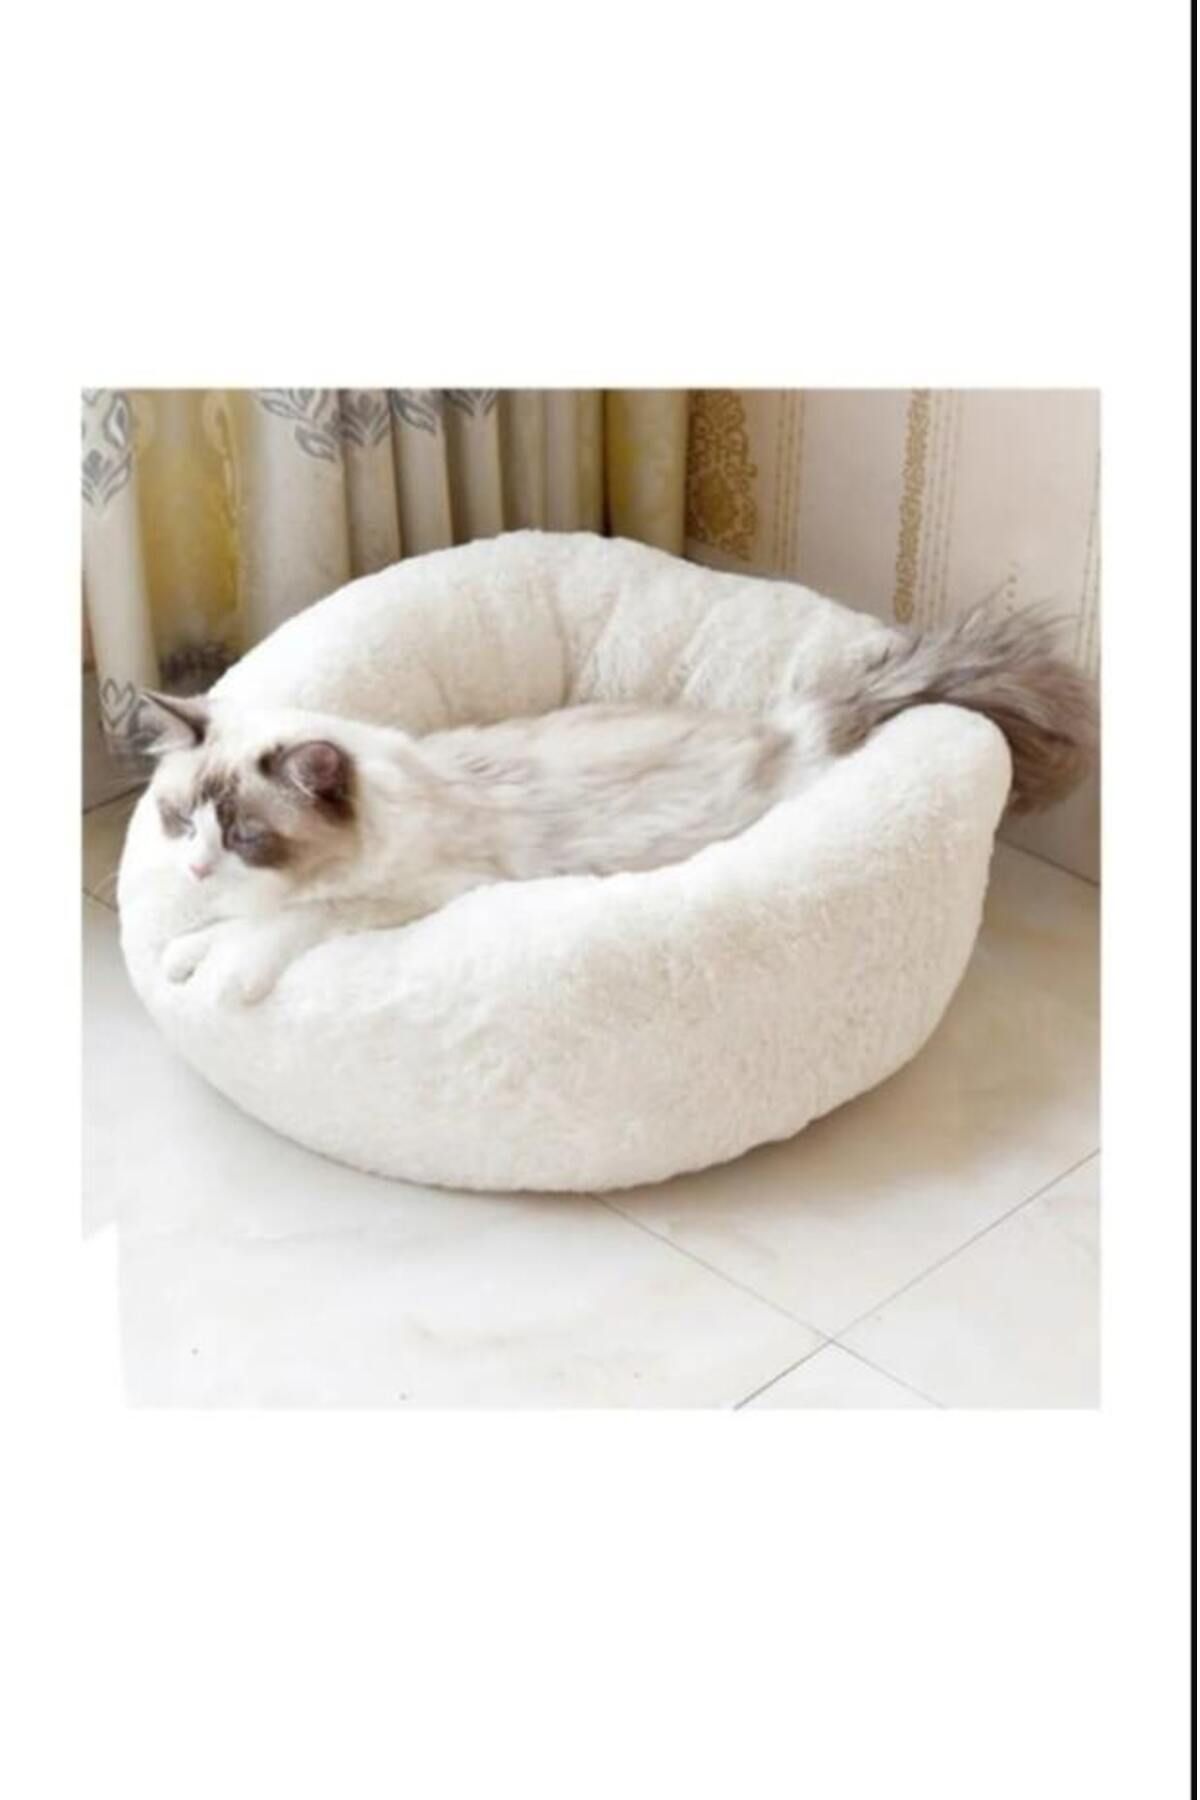 Ottoman center GÜPO BEBE beyaz kedi yatağı - kedi minderi - simit yatak - sıcak tutan yatak - kışlık kedi yatağı